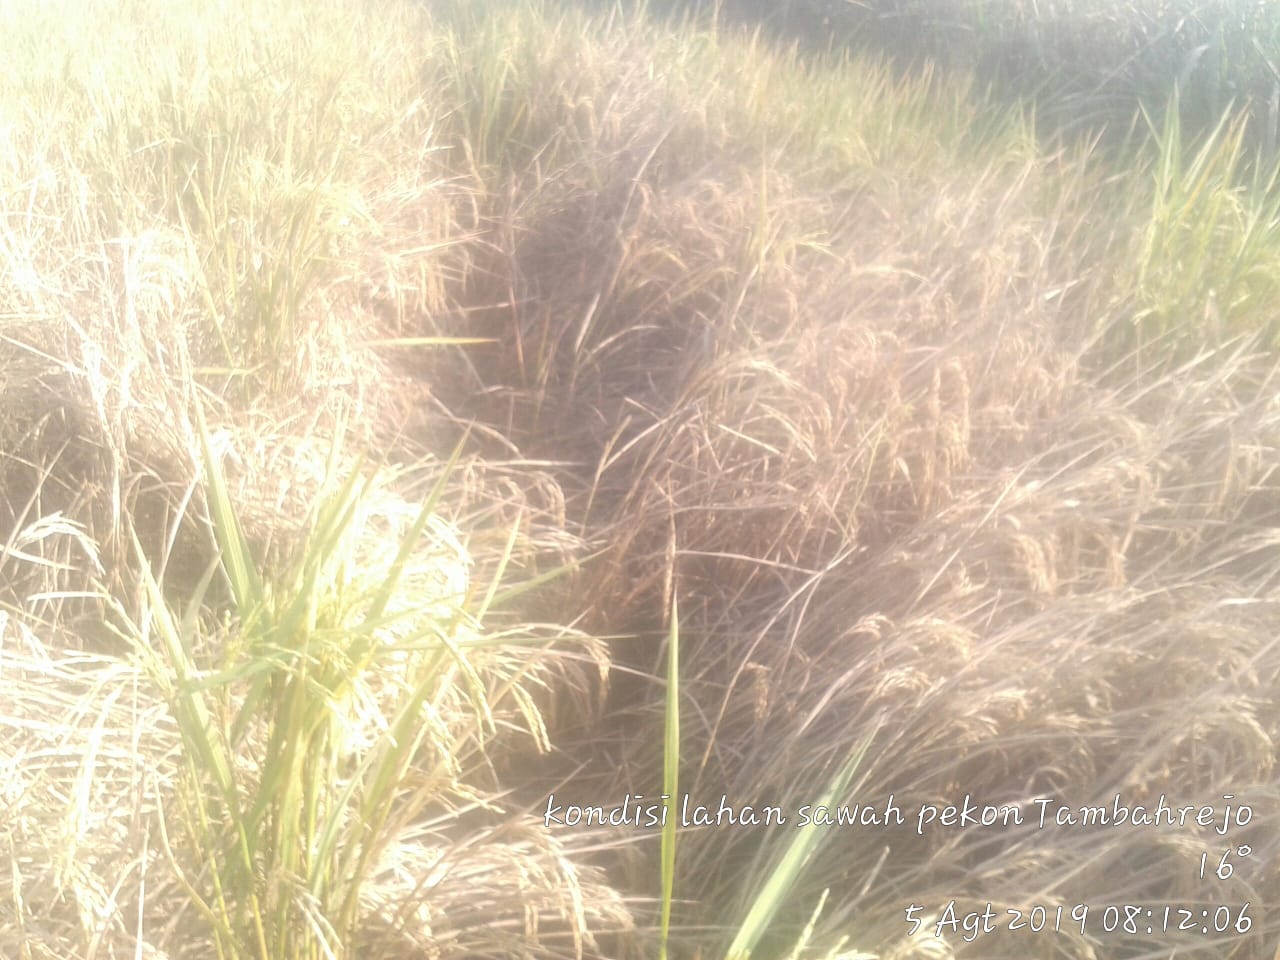 Beginilah, kondisi tanaman padi di wilayah pekon tambahrejo yang terserang hama wereng dan rusak berat